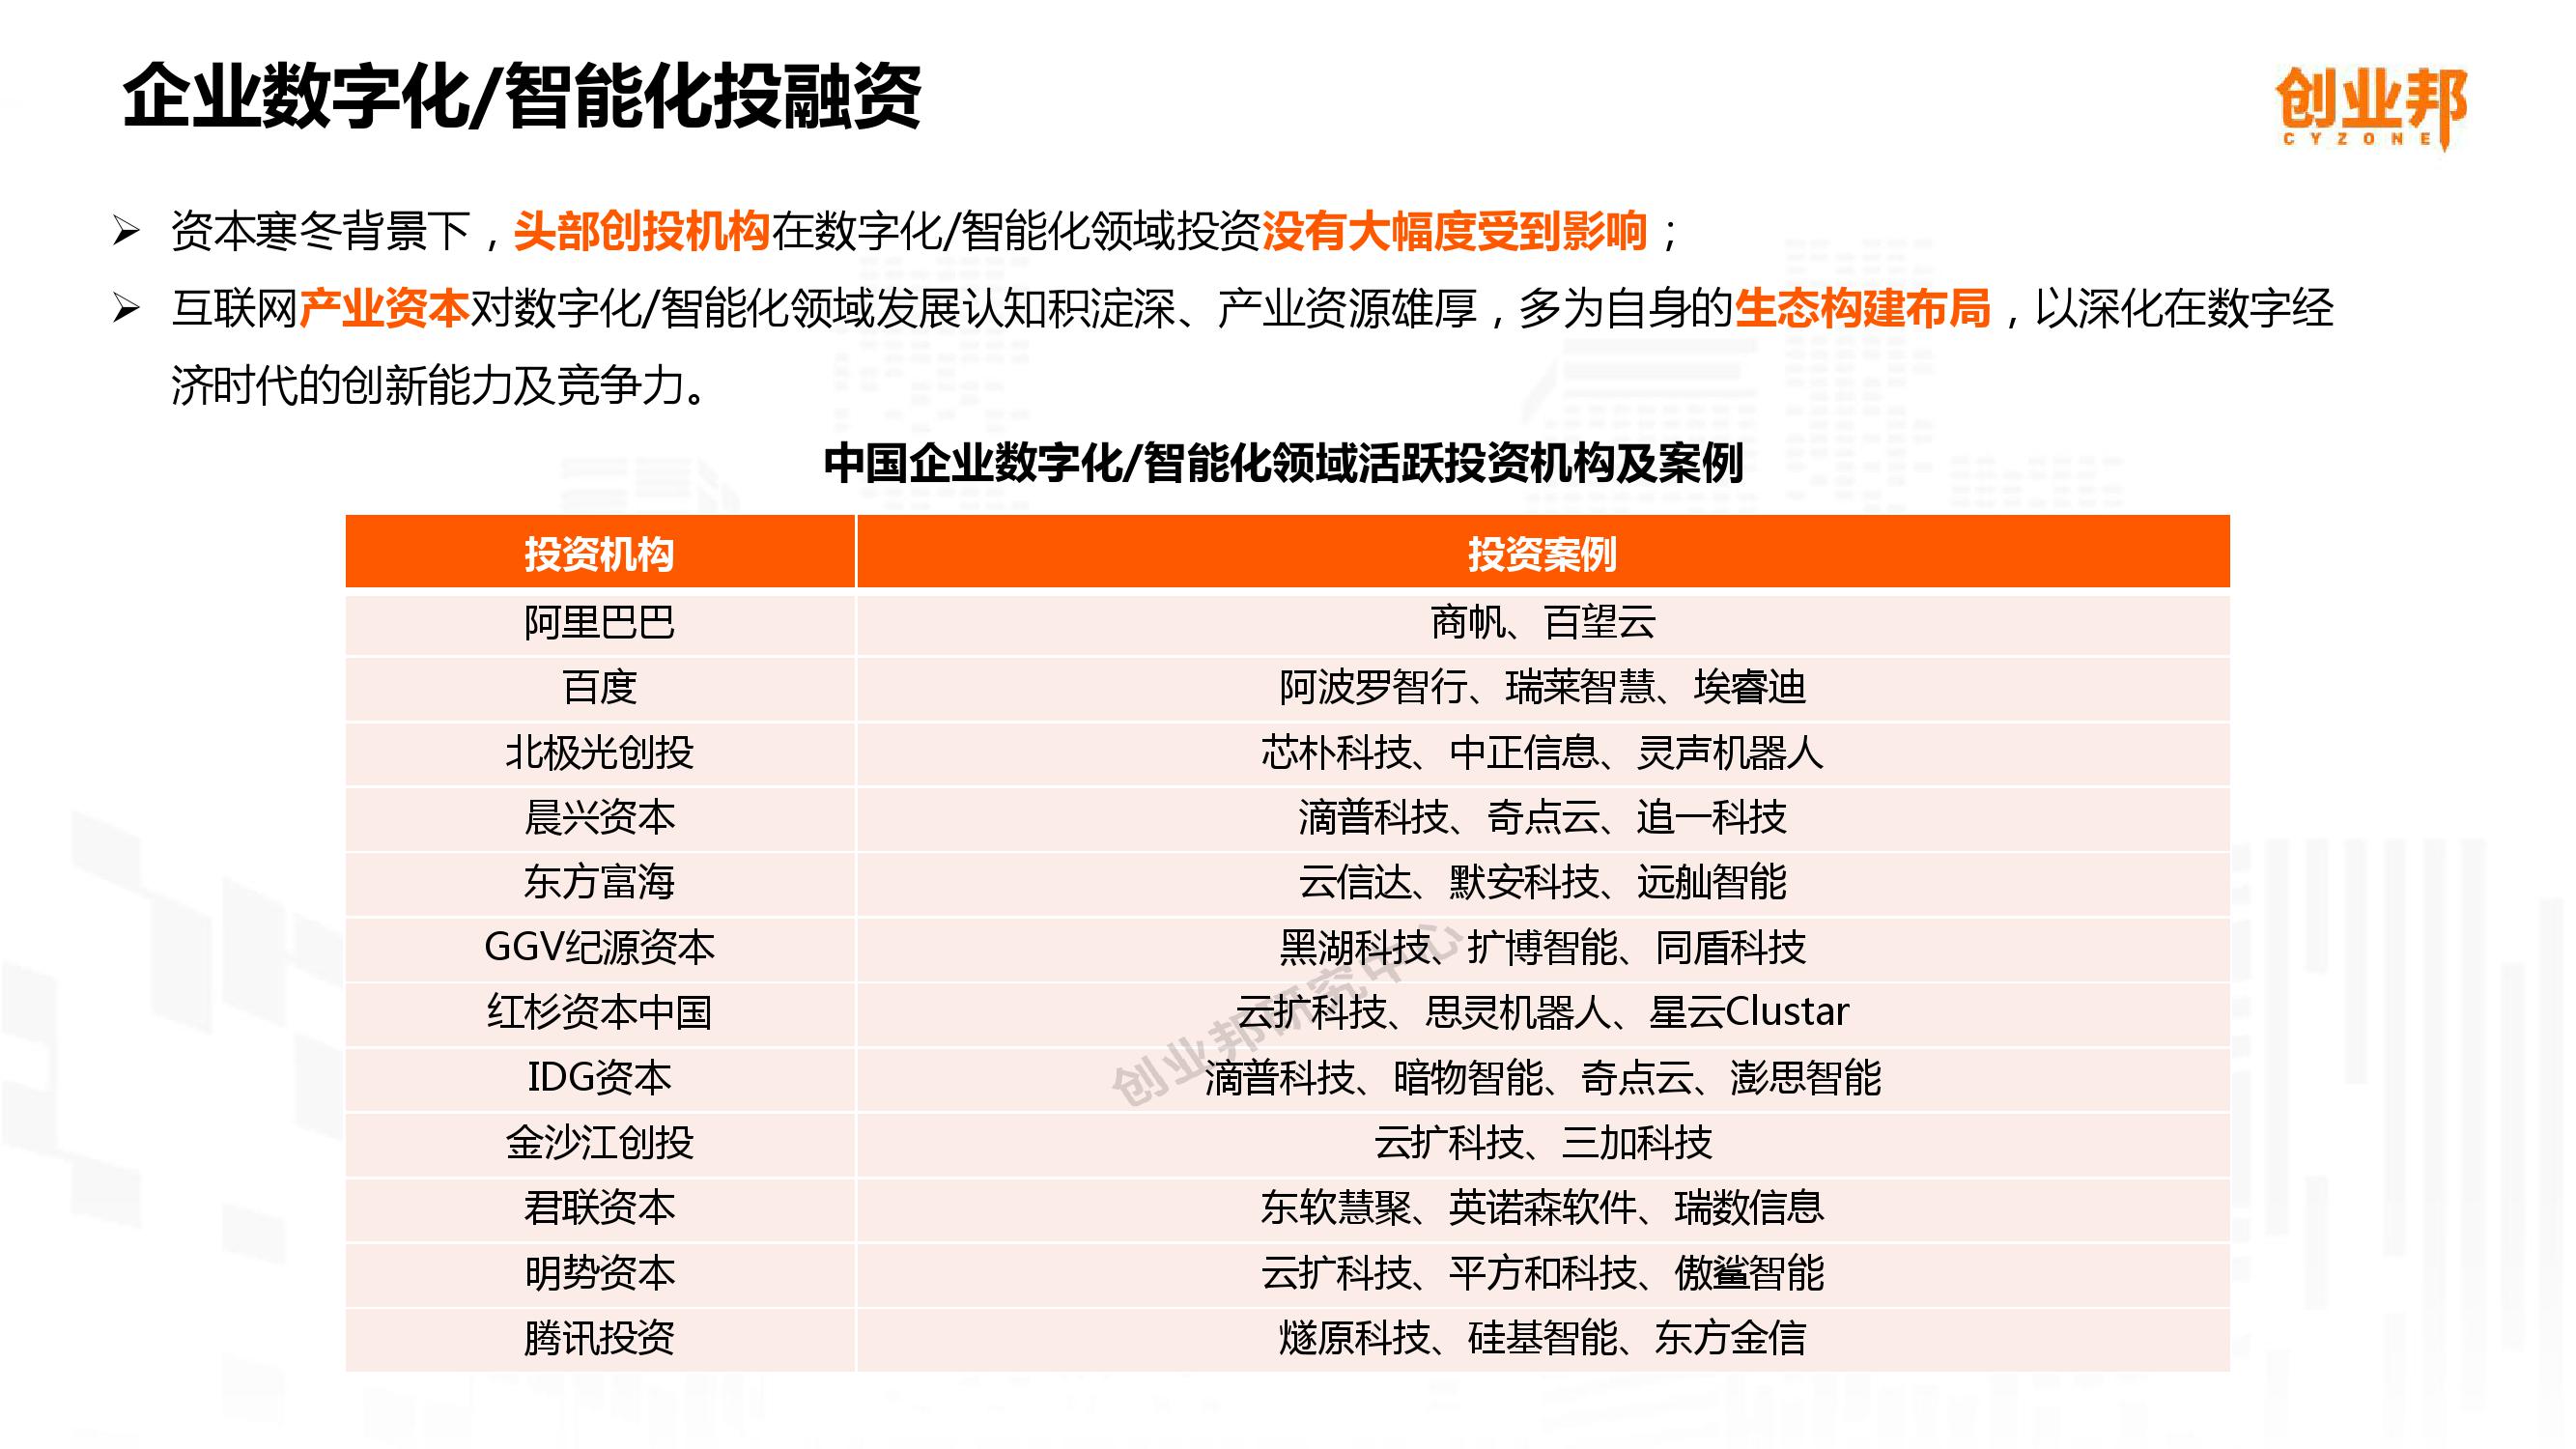 2019中国企业数字化智能化研究报告_000012-3